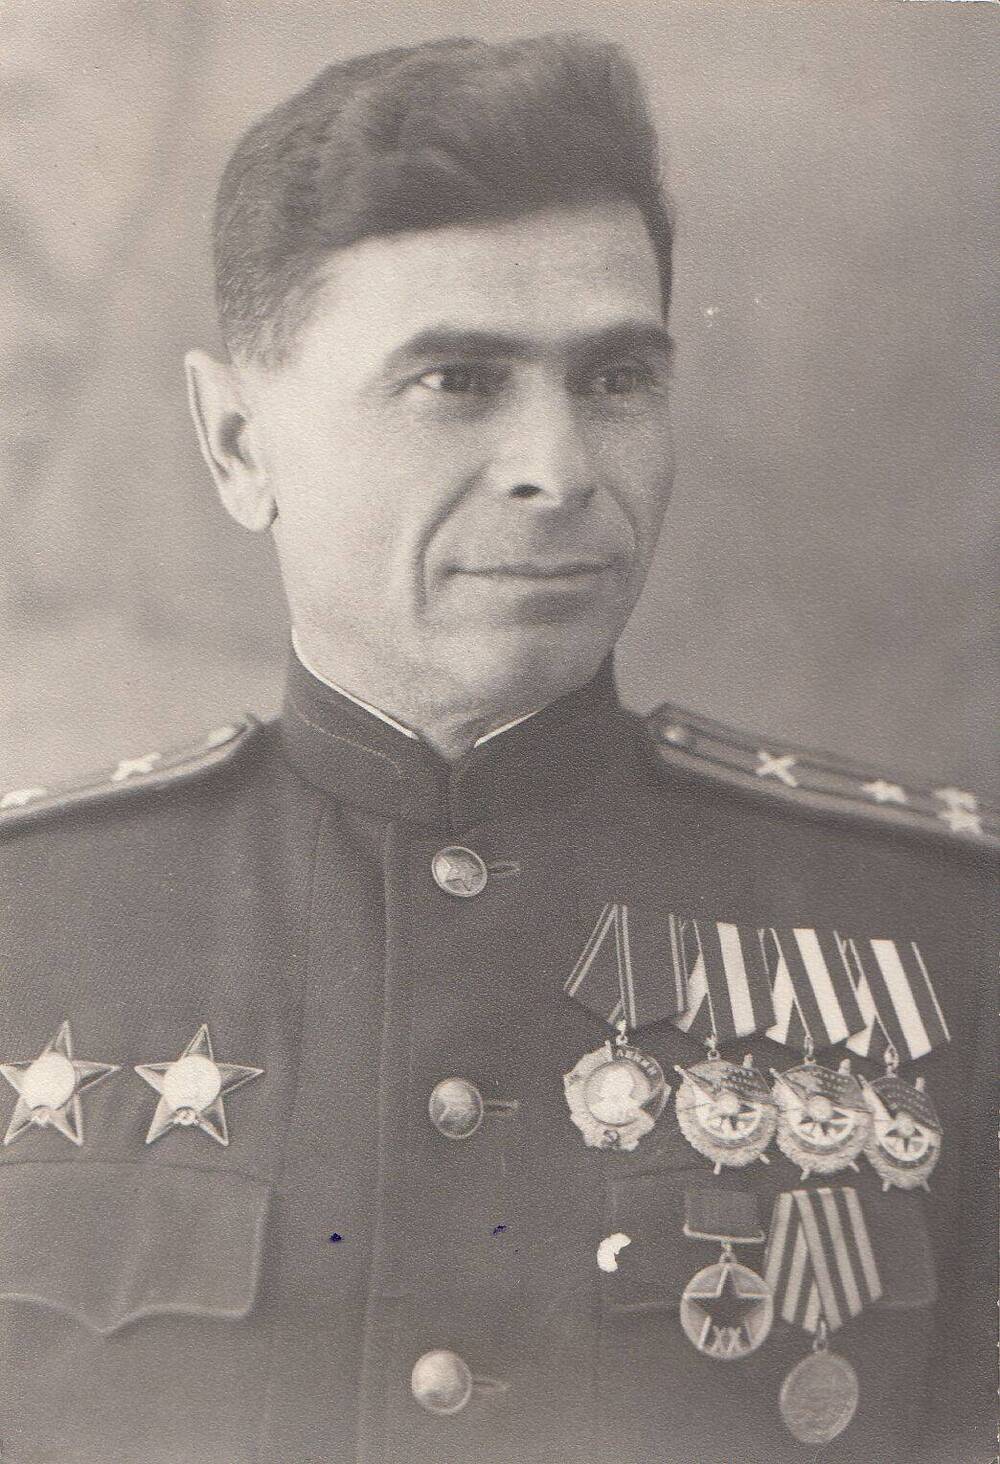 Фотография: Копелев Арон Исаакович, бывший начальник штаба Подольского артиллерийского училища